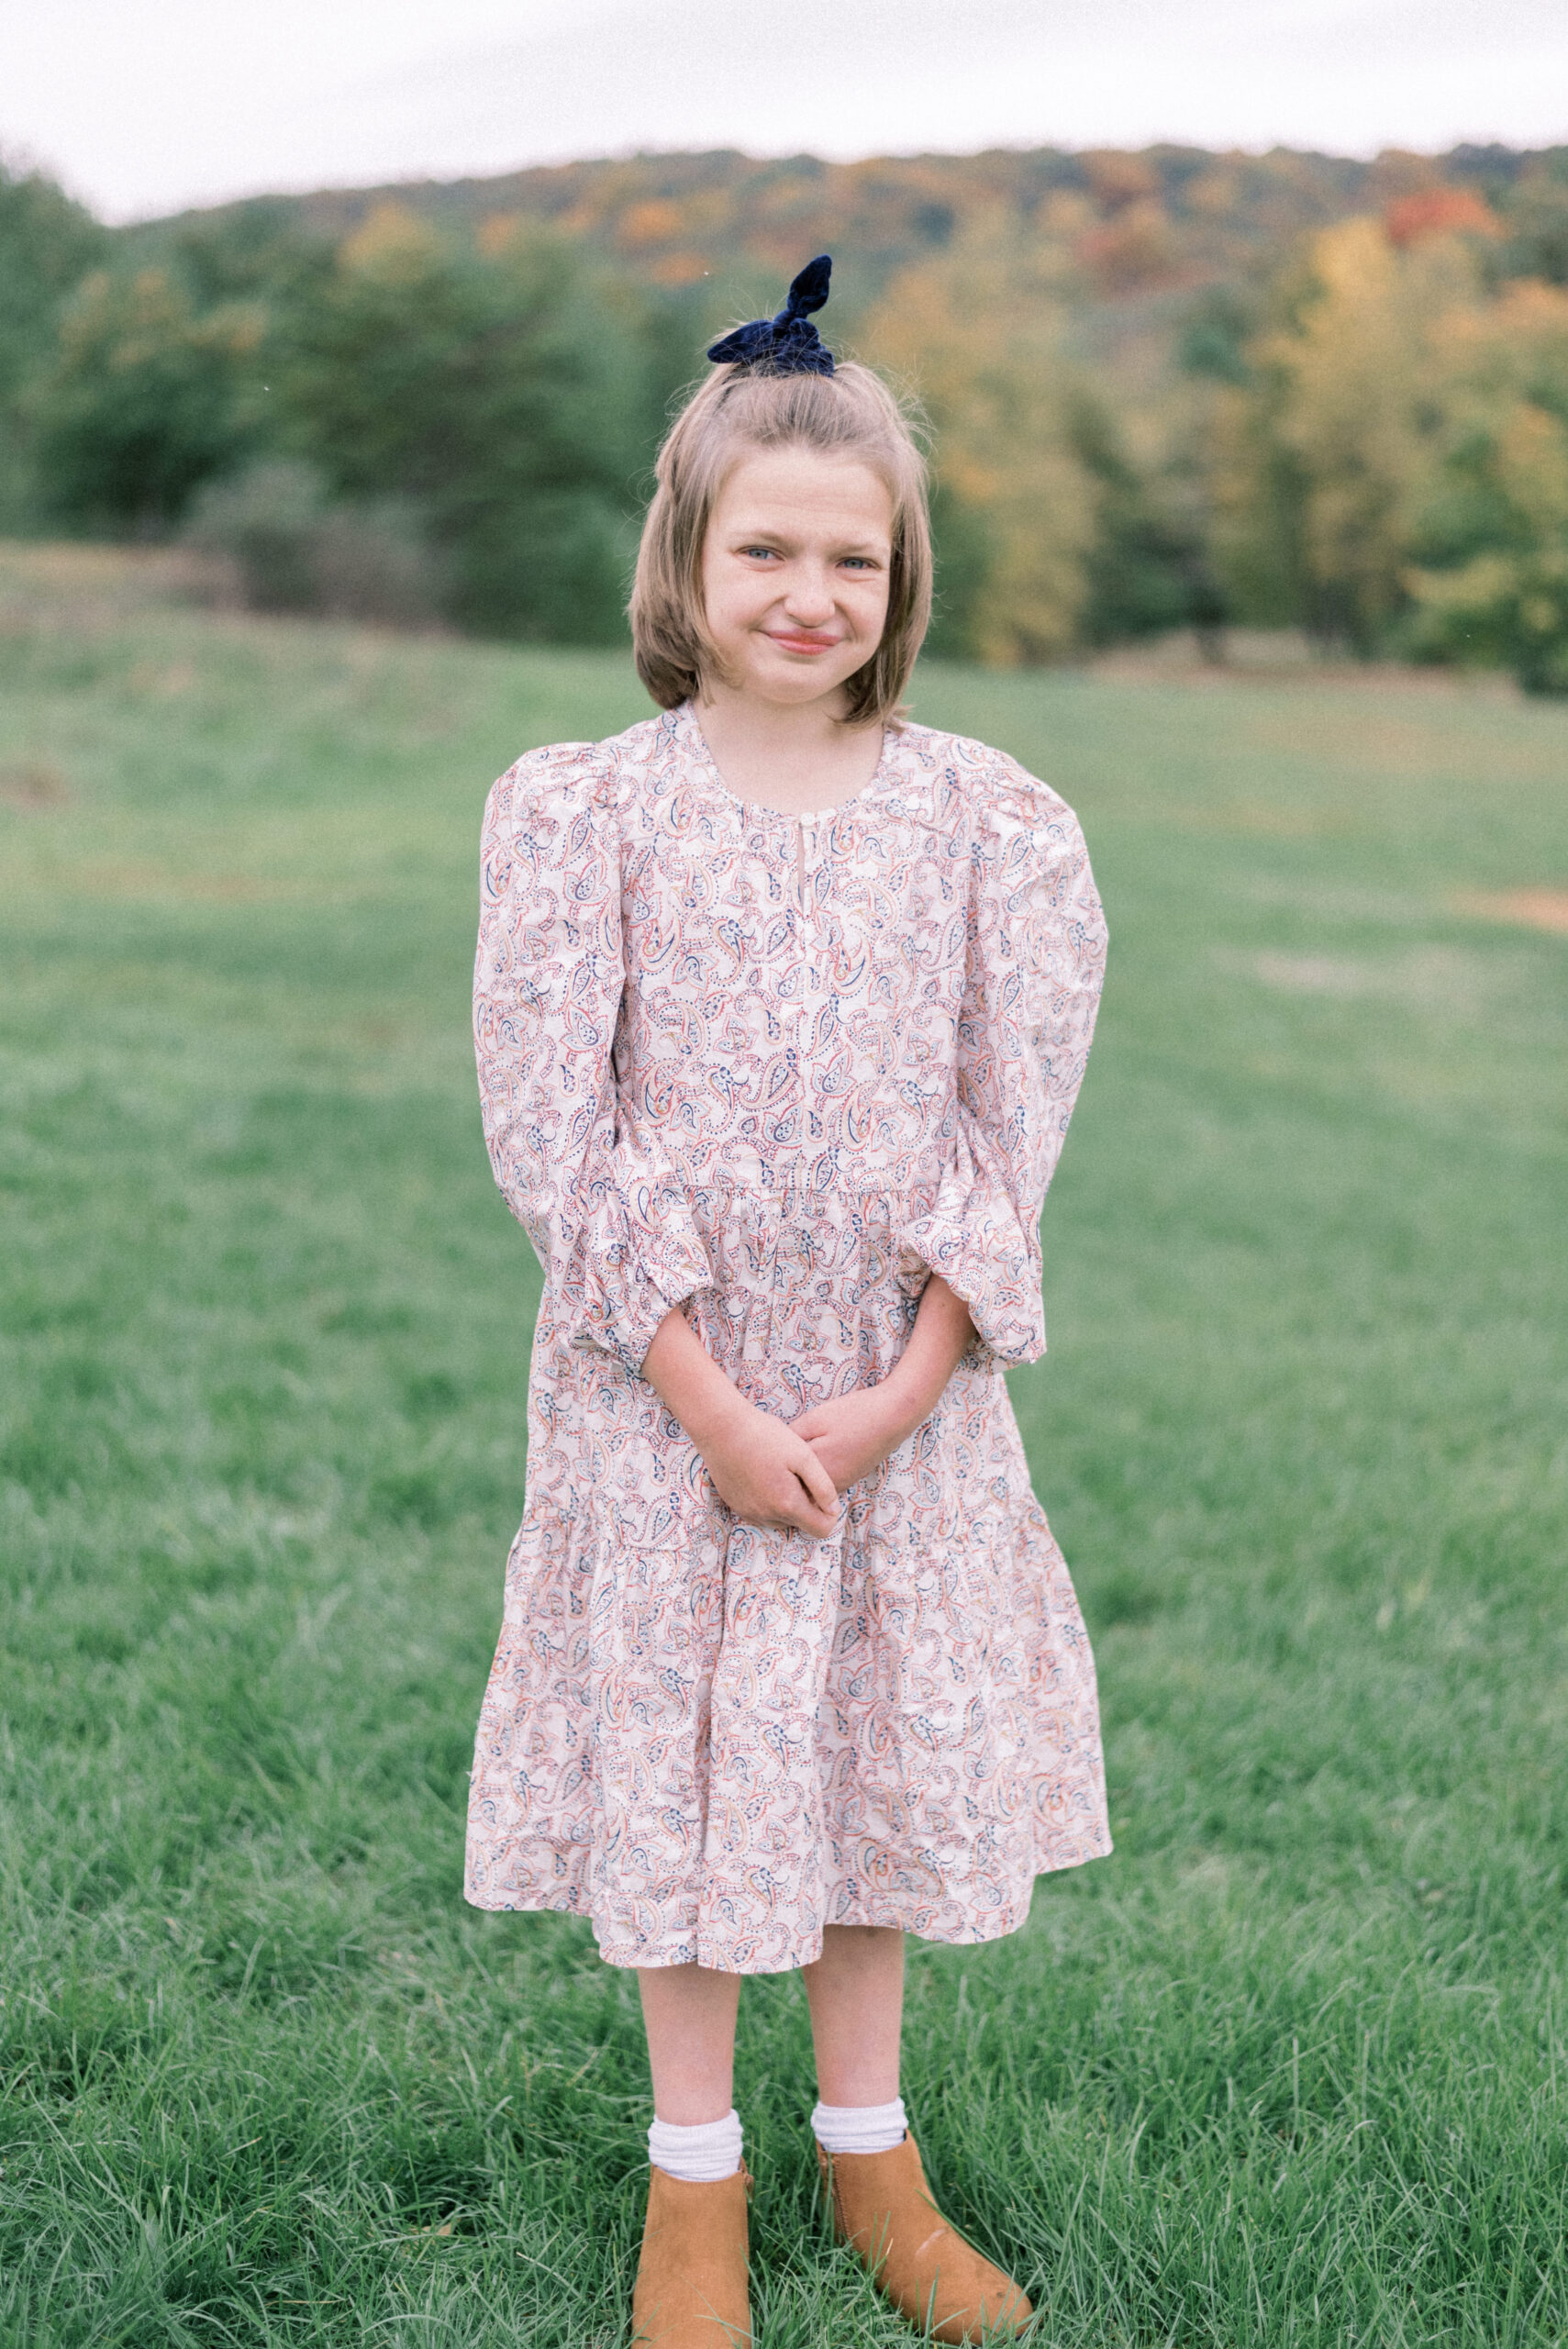 Pennsylvania photographer captures young girl wearing pink dress